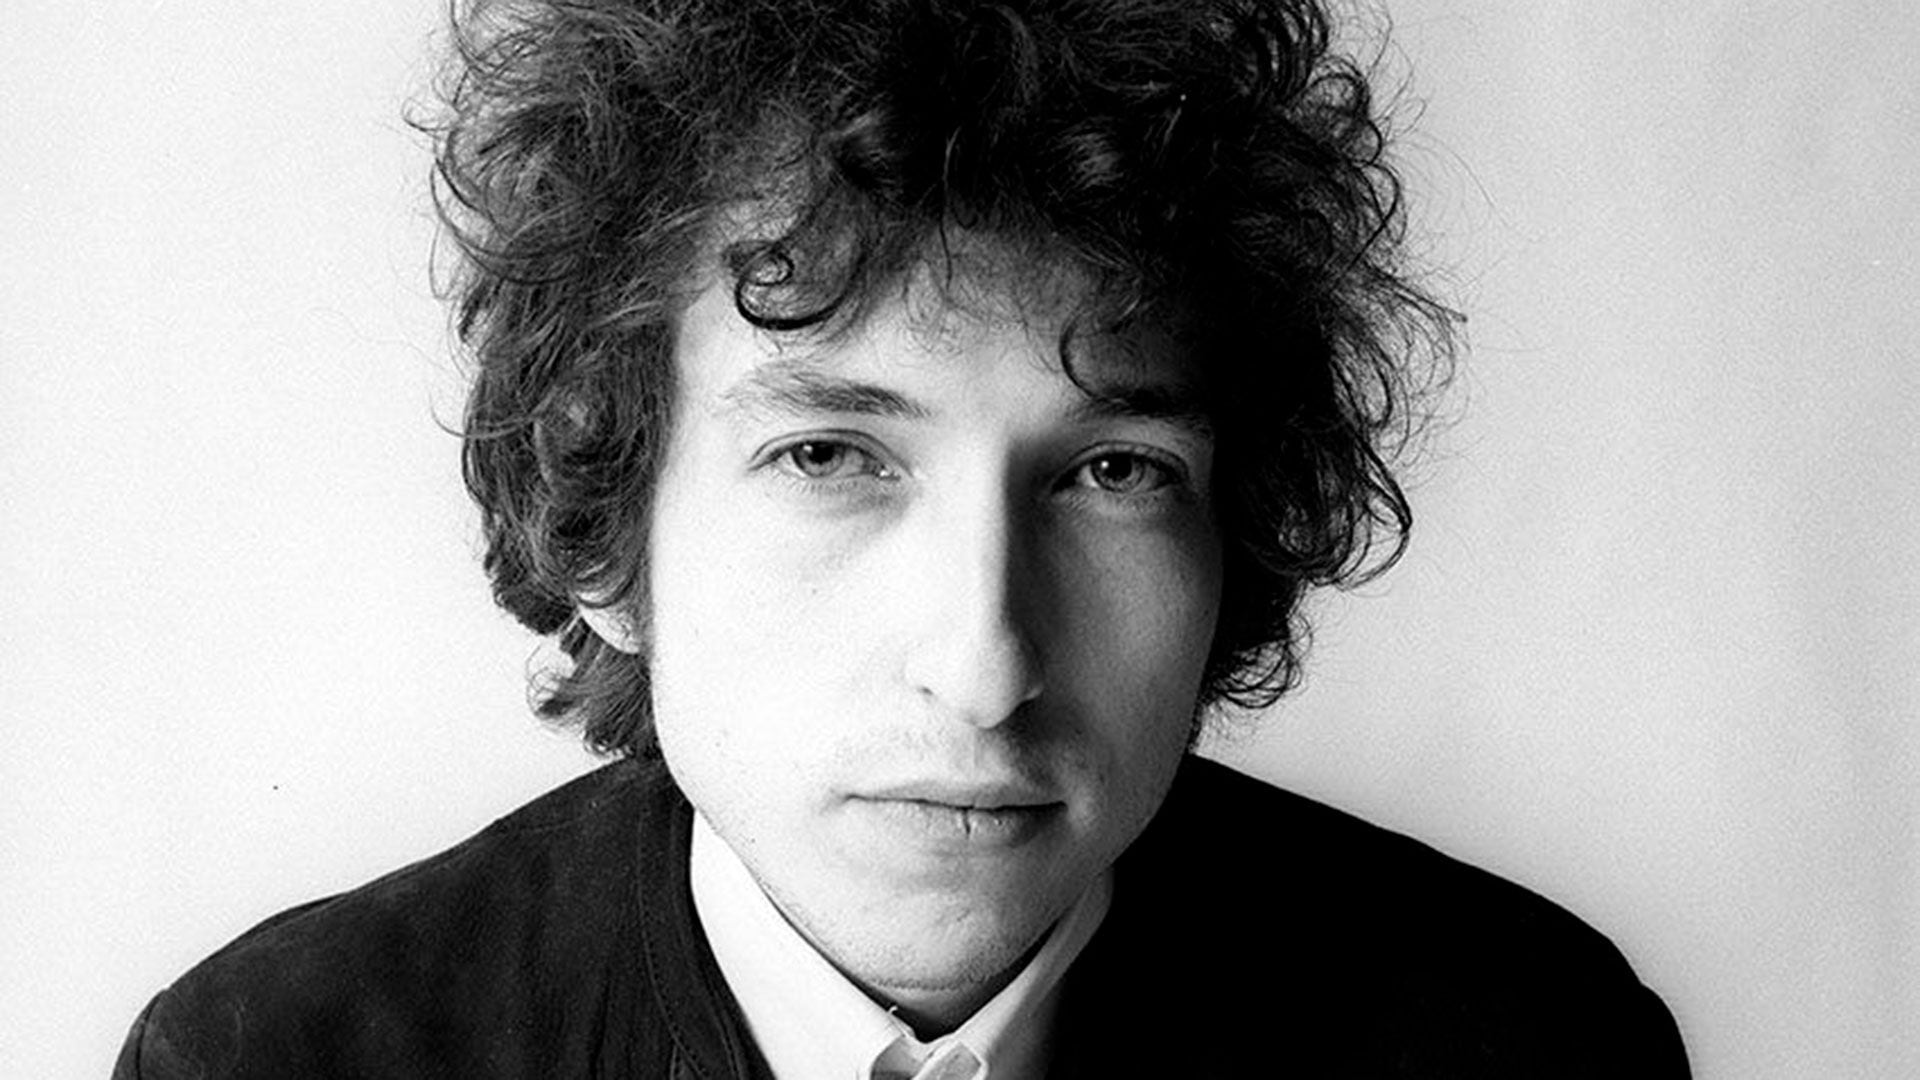 Bob Dylan, retratado en los años 60, en el esplendor de su ascenso como estrella folk